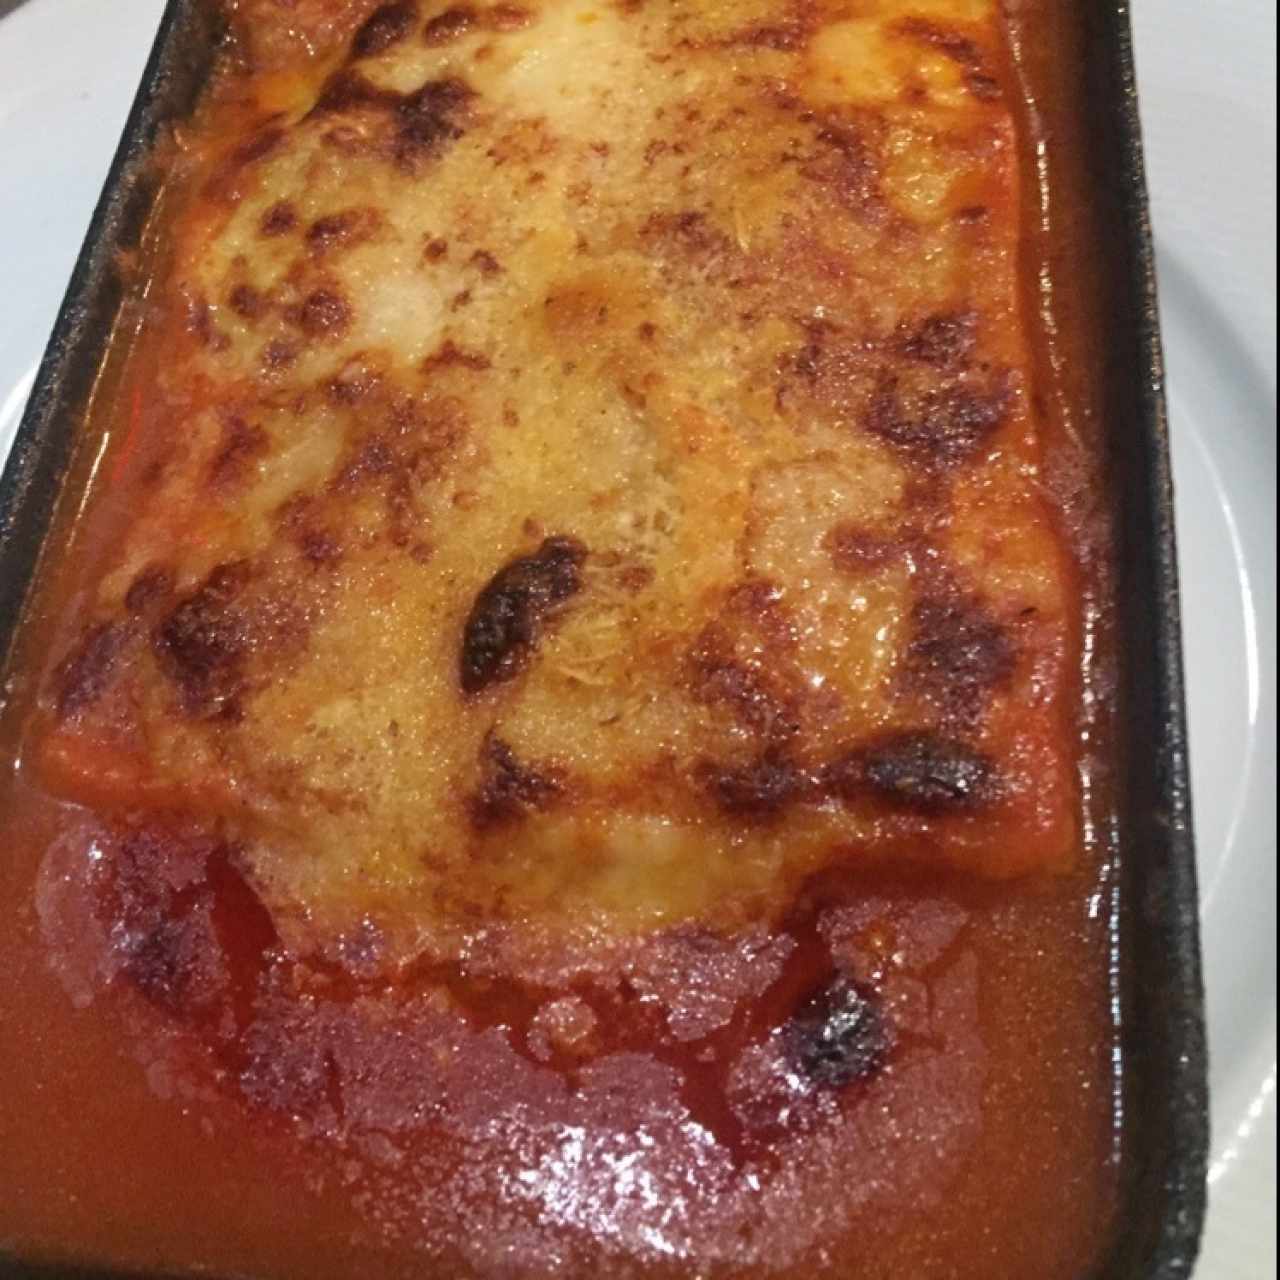 Pastas especiales - Lasagna di carne